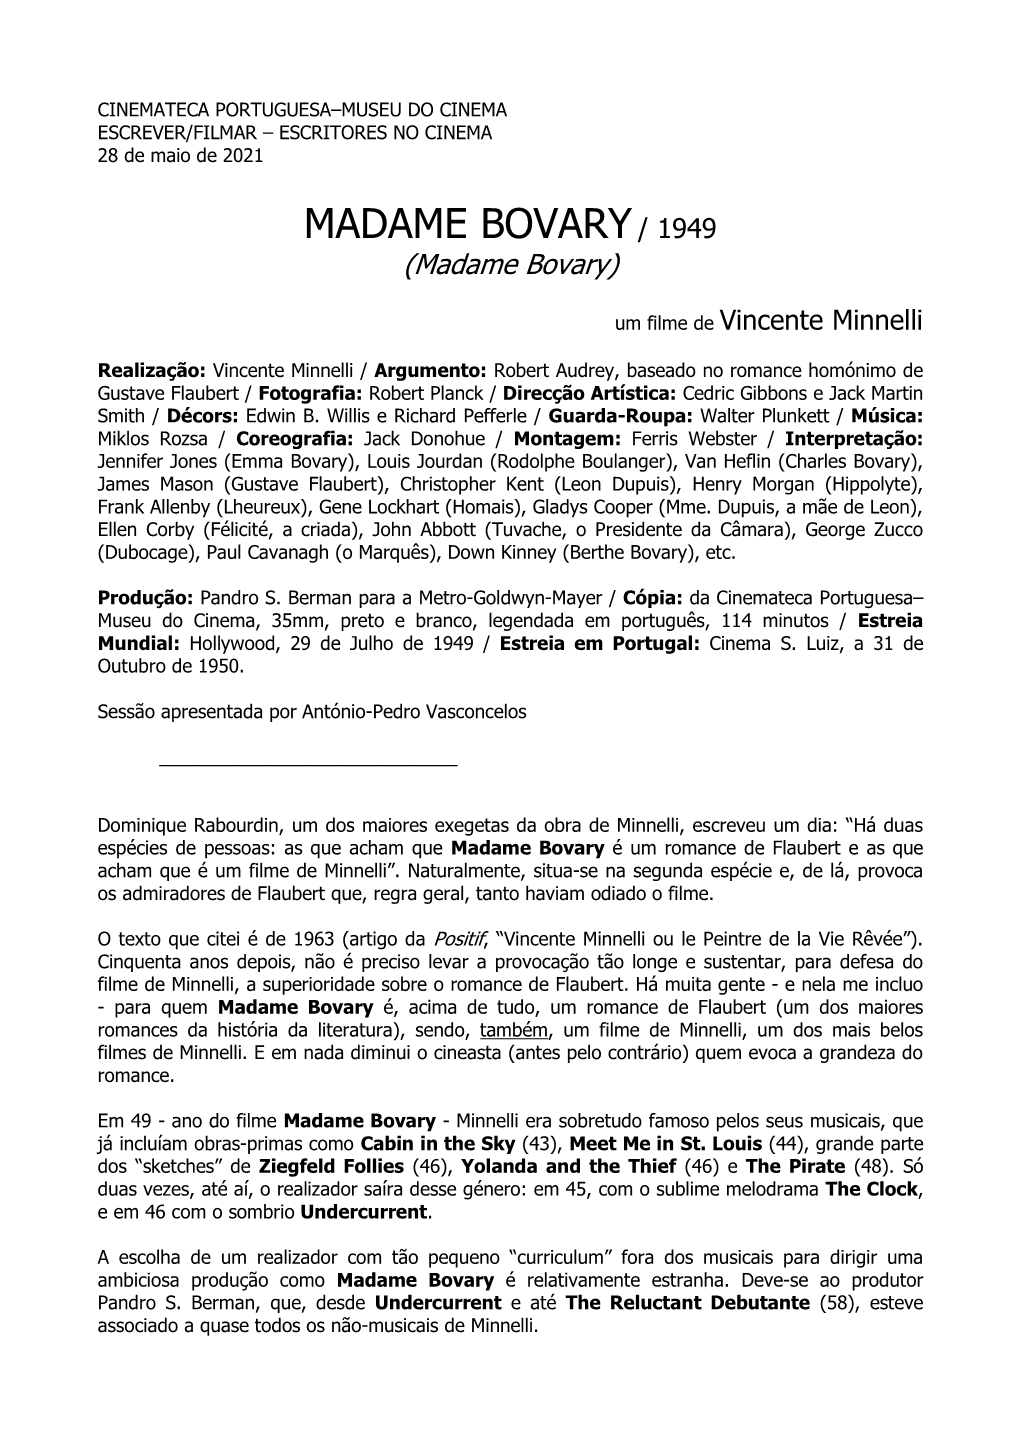 MADAME BOVARY / 1949 (Madame Bovary)